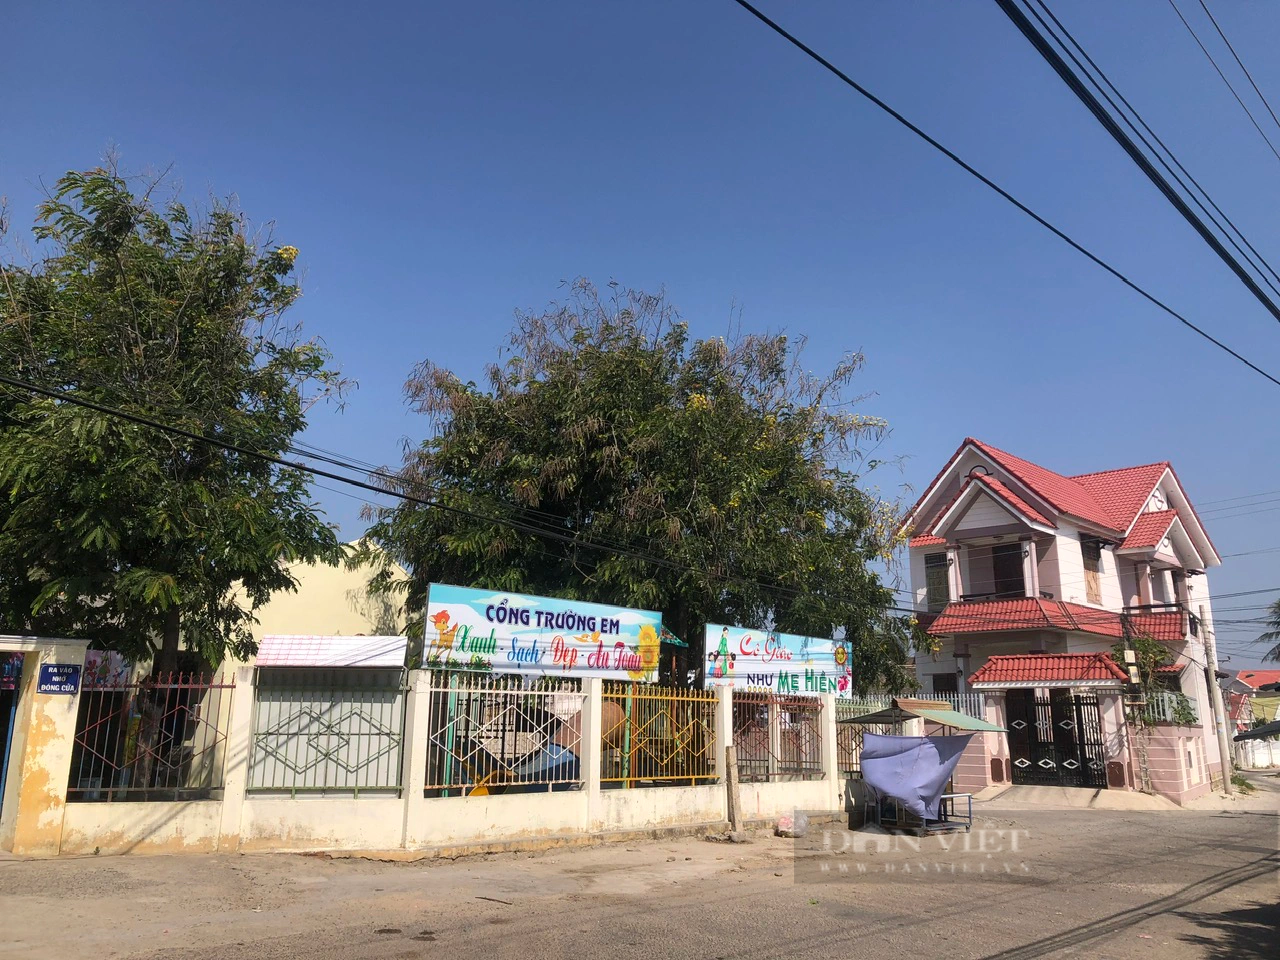 Cộng đồng người Chăm xã Phú Lạc chung tay với chính quyền xây dựng nông thôn mới, nâng cao thu nhập - Ảnh 6.